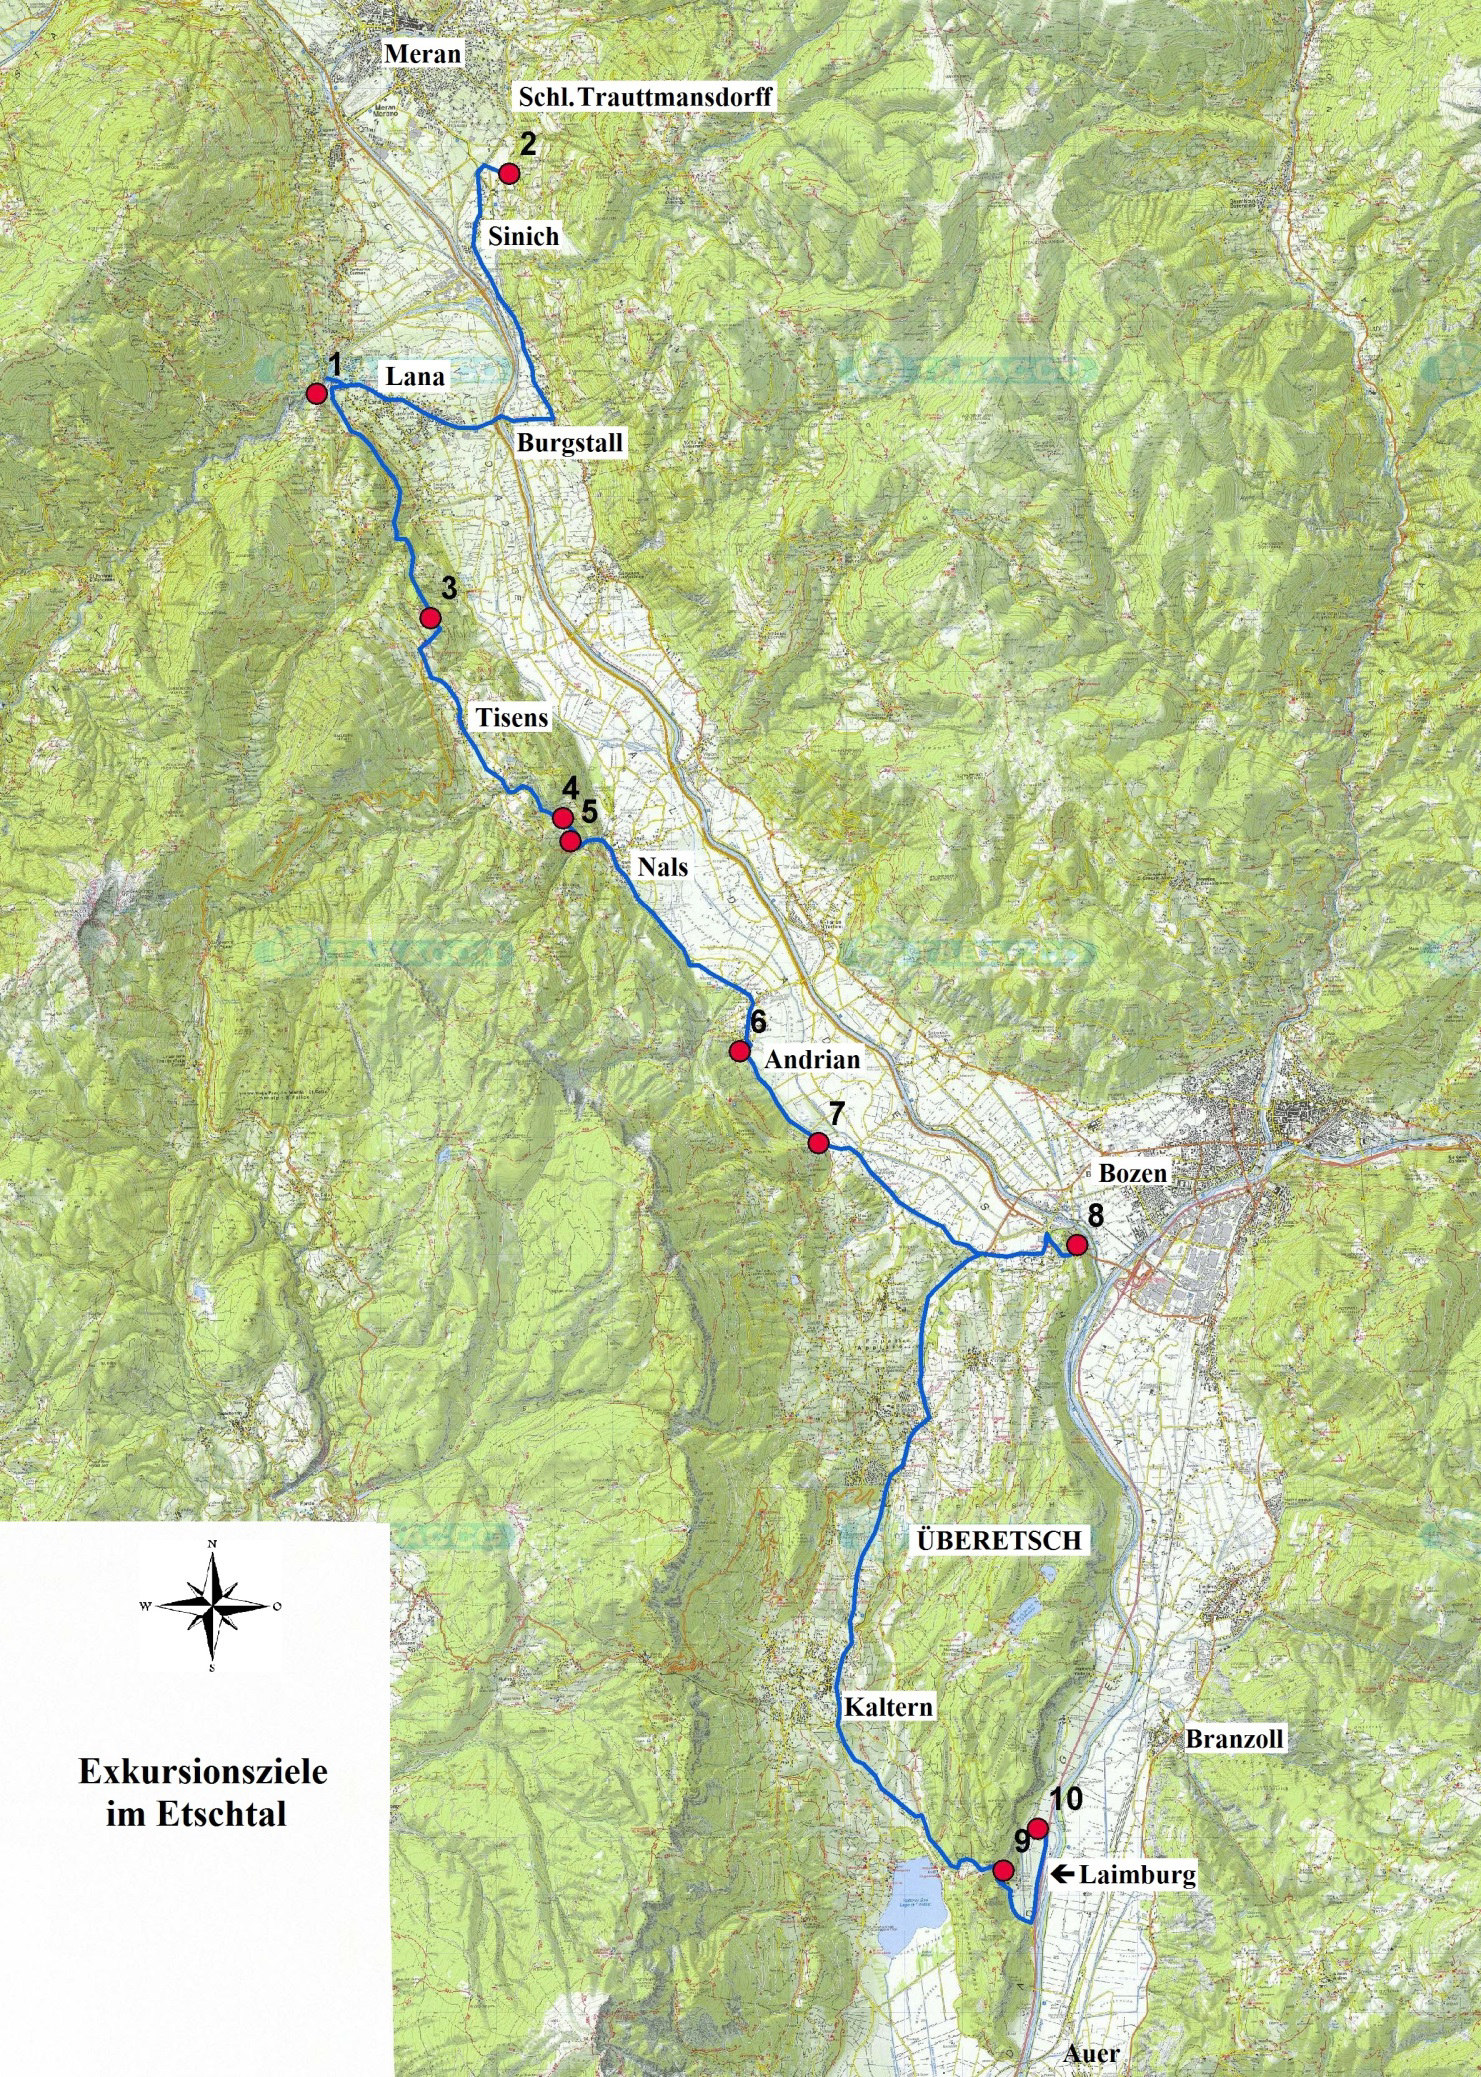 Programm der Exkursionen Stein und Wein in Südtirol und Trentino: (In der Regel Exkursionsdauer von 9 h bis max. 17.30 h. Mittagspause je nach Wetter u.